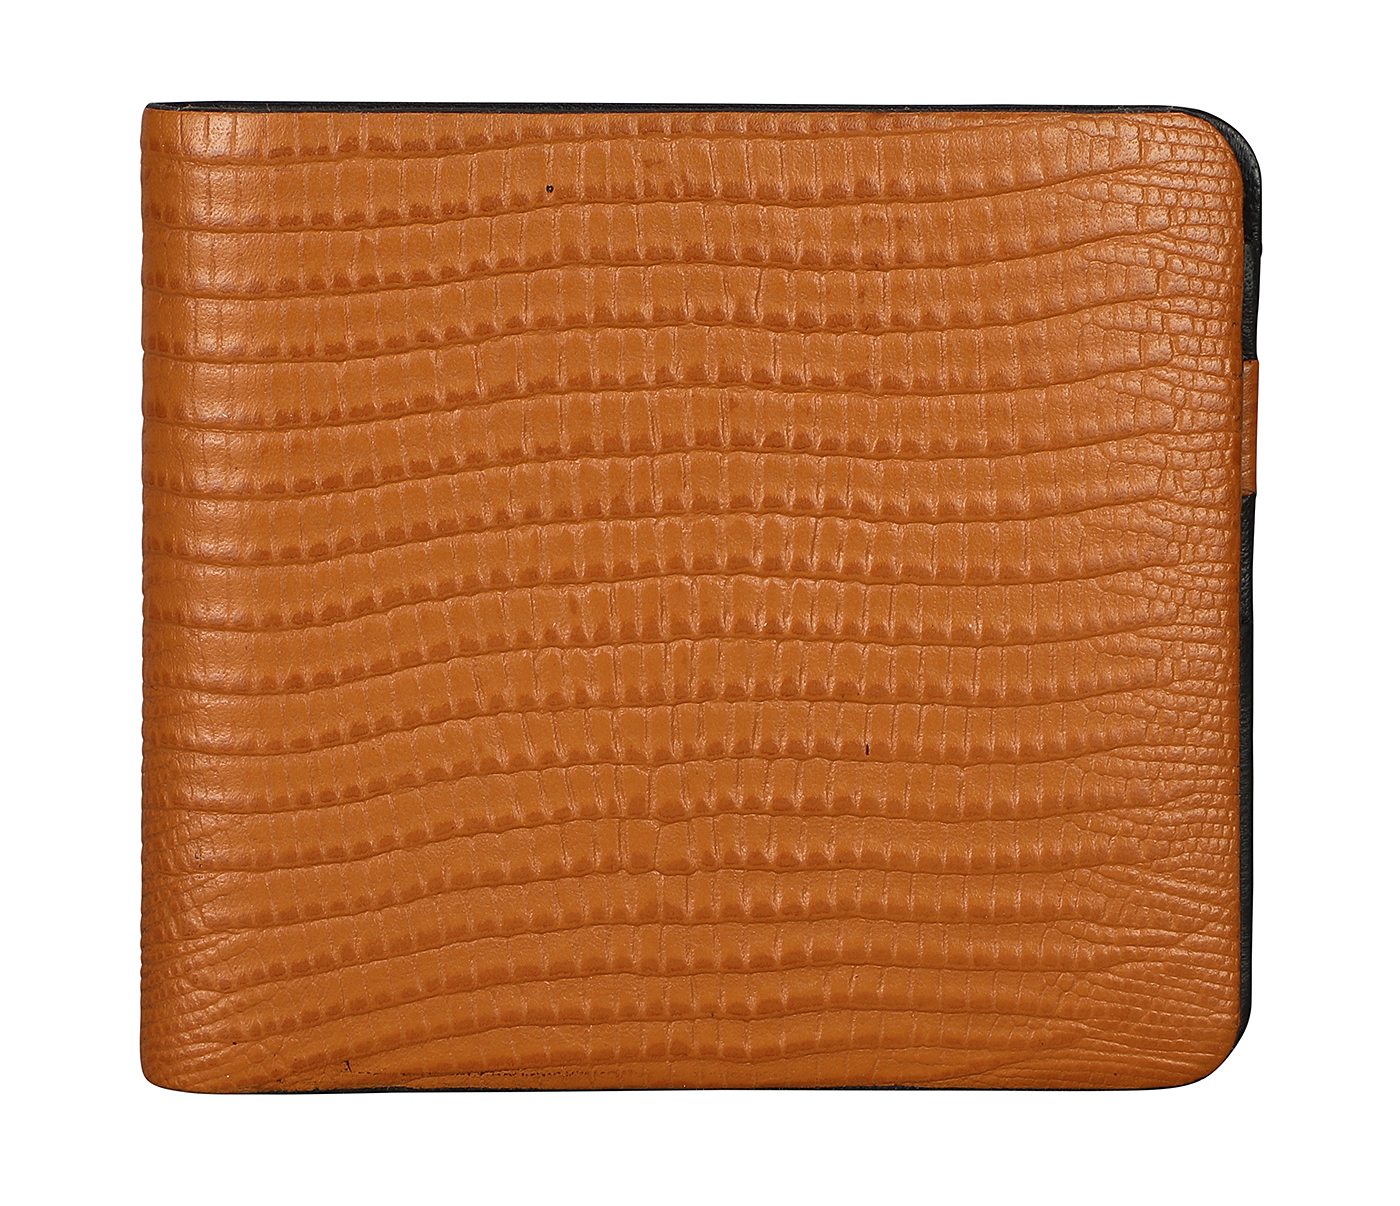 VW19-Manuel-Men's bifold wallet in genuine leather - Tan